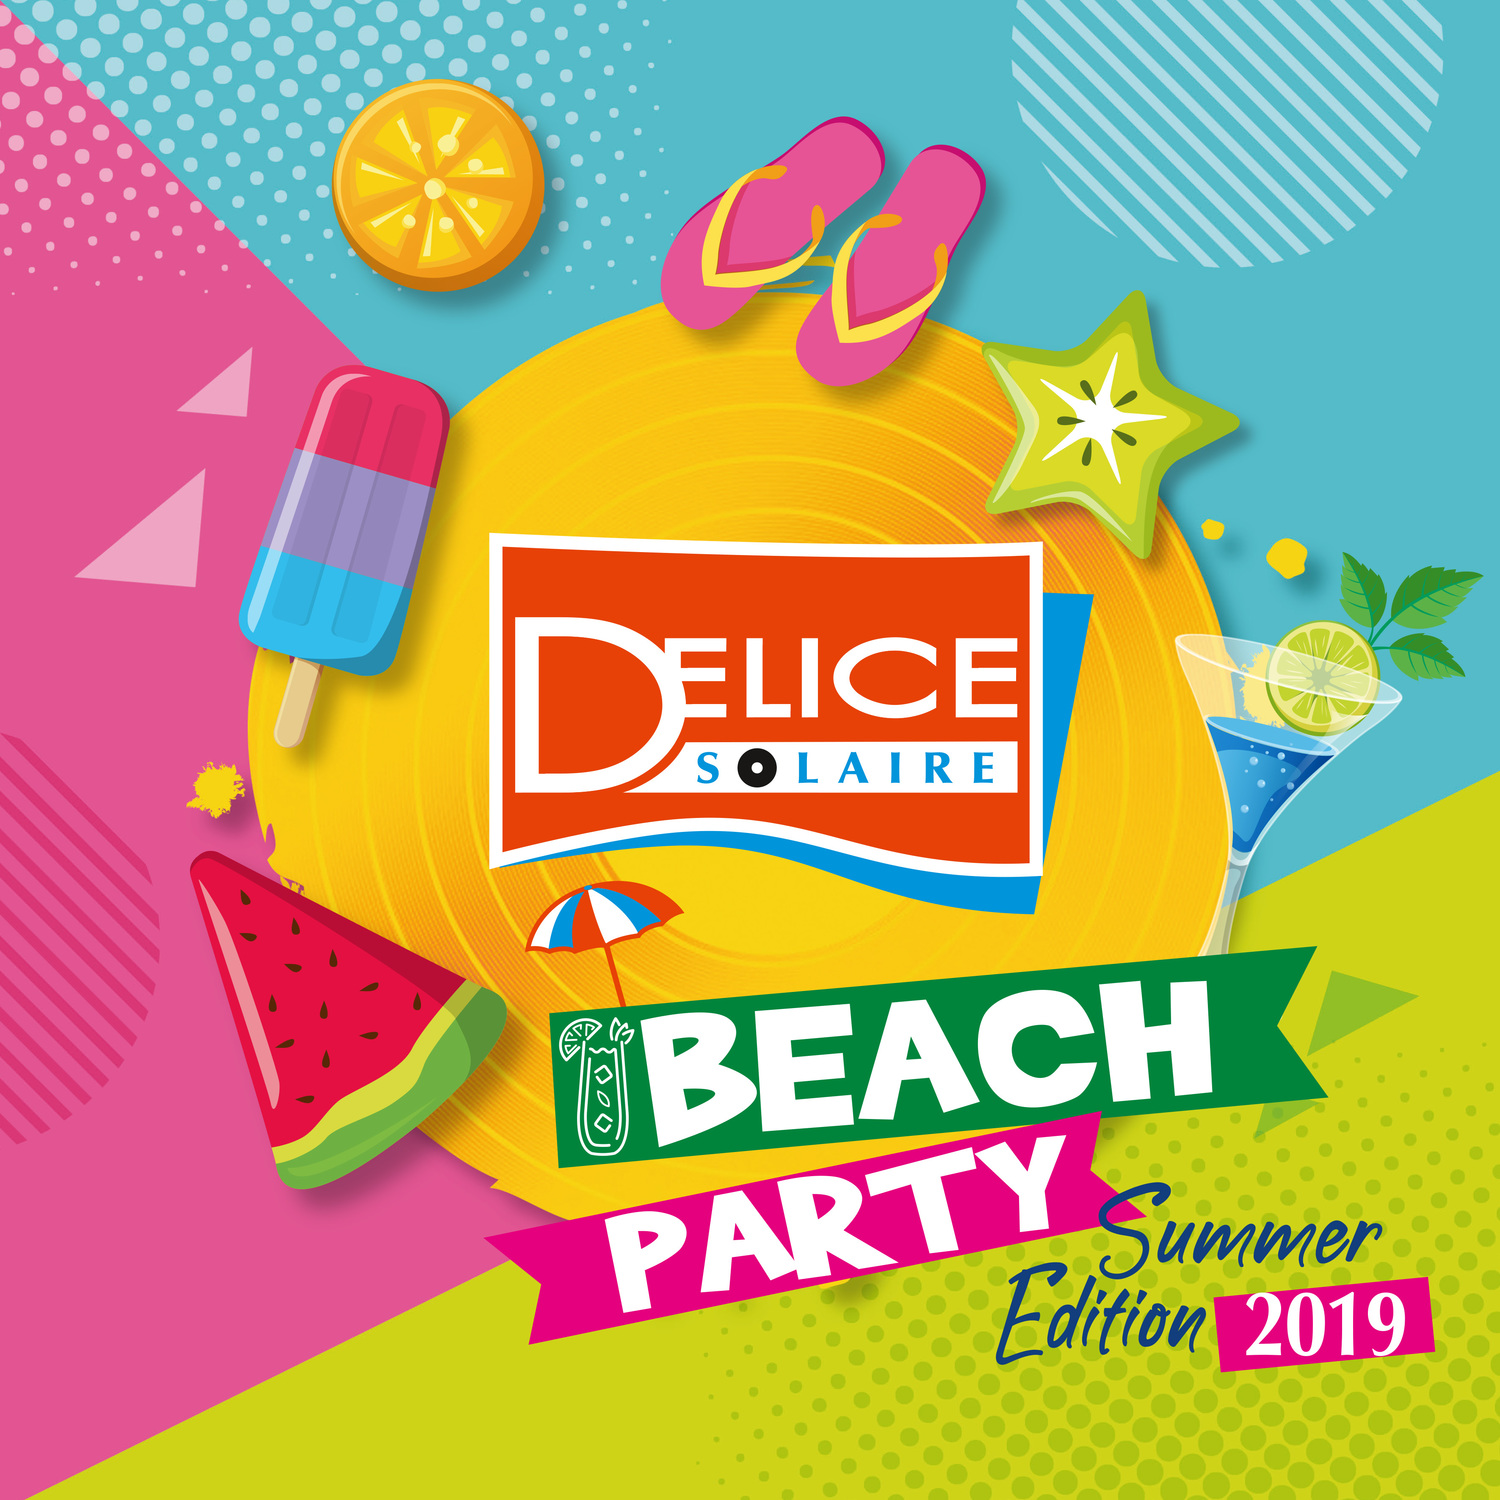 Delice Beach Party acqua solare summer edition 2019